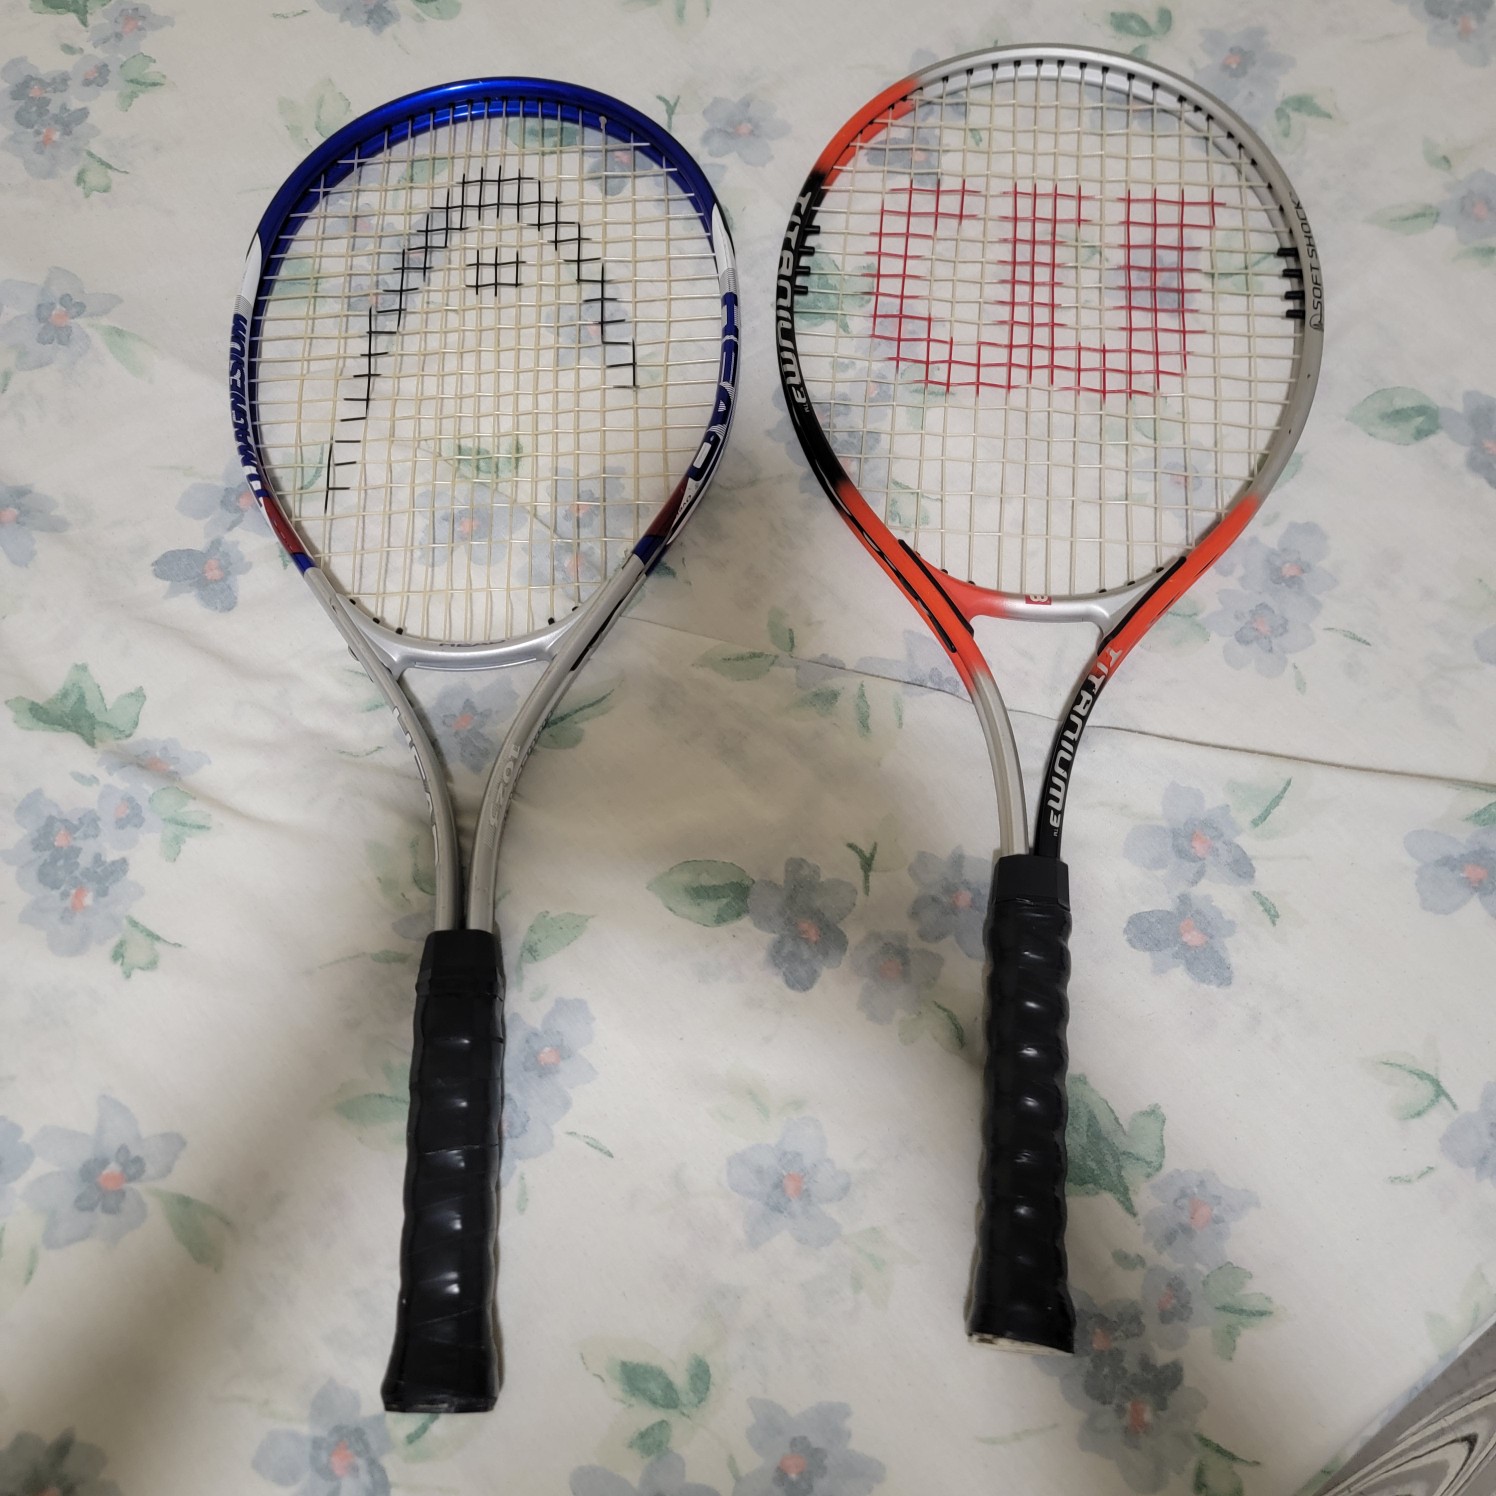 deportes - Raquetas de tennis

